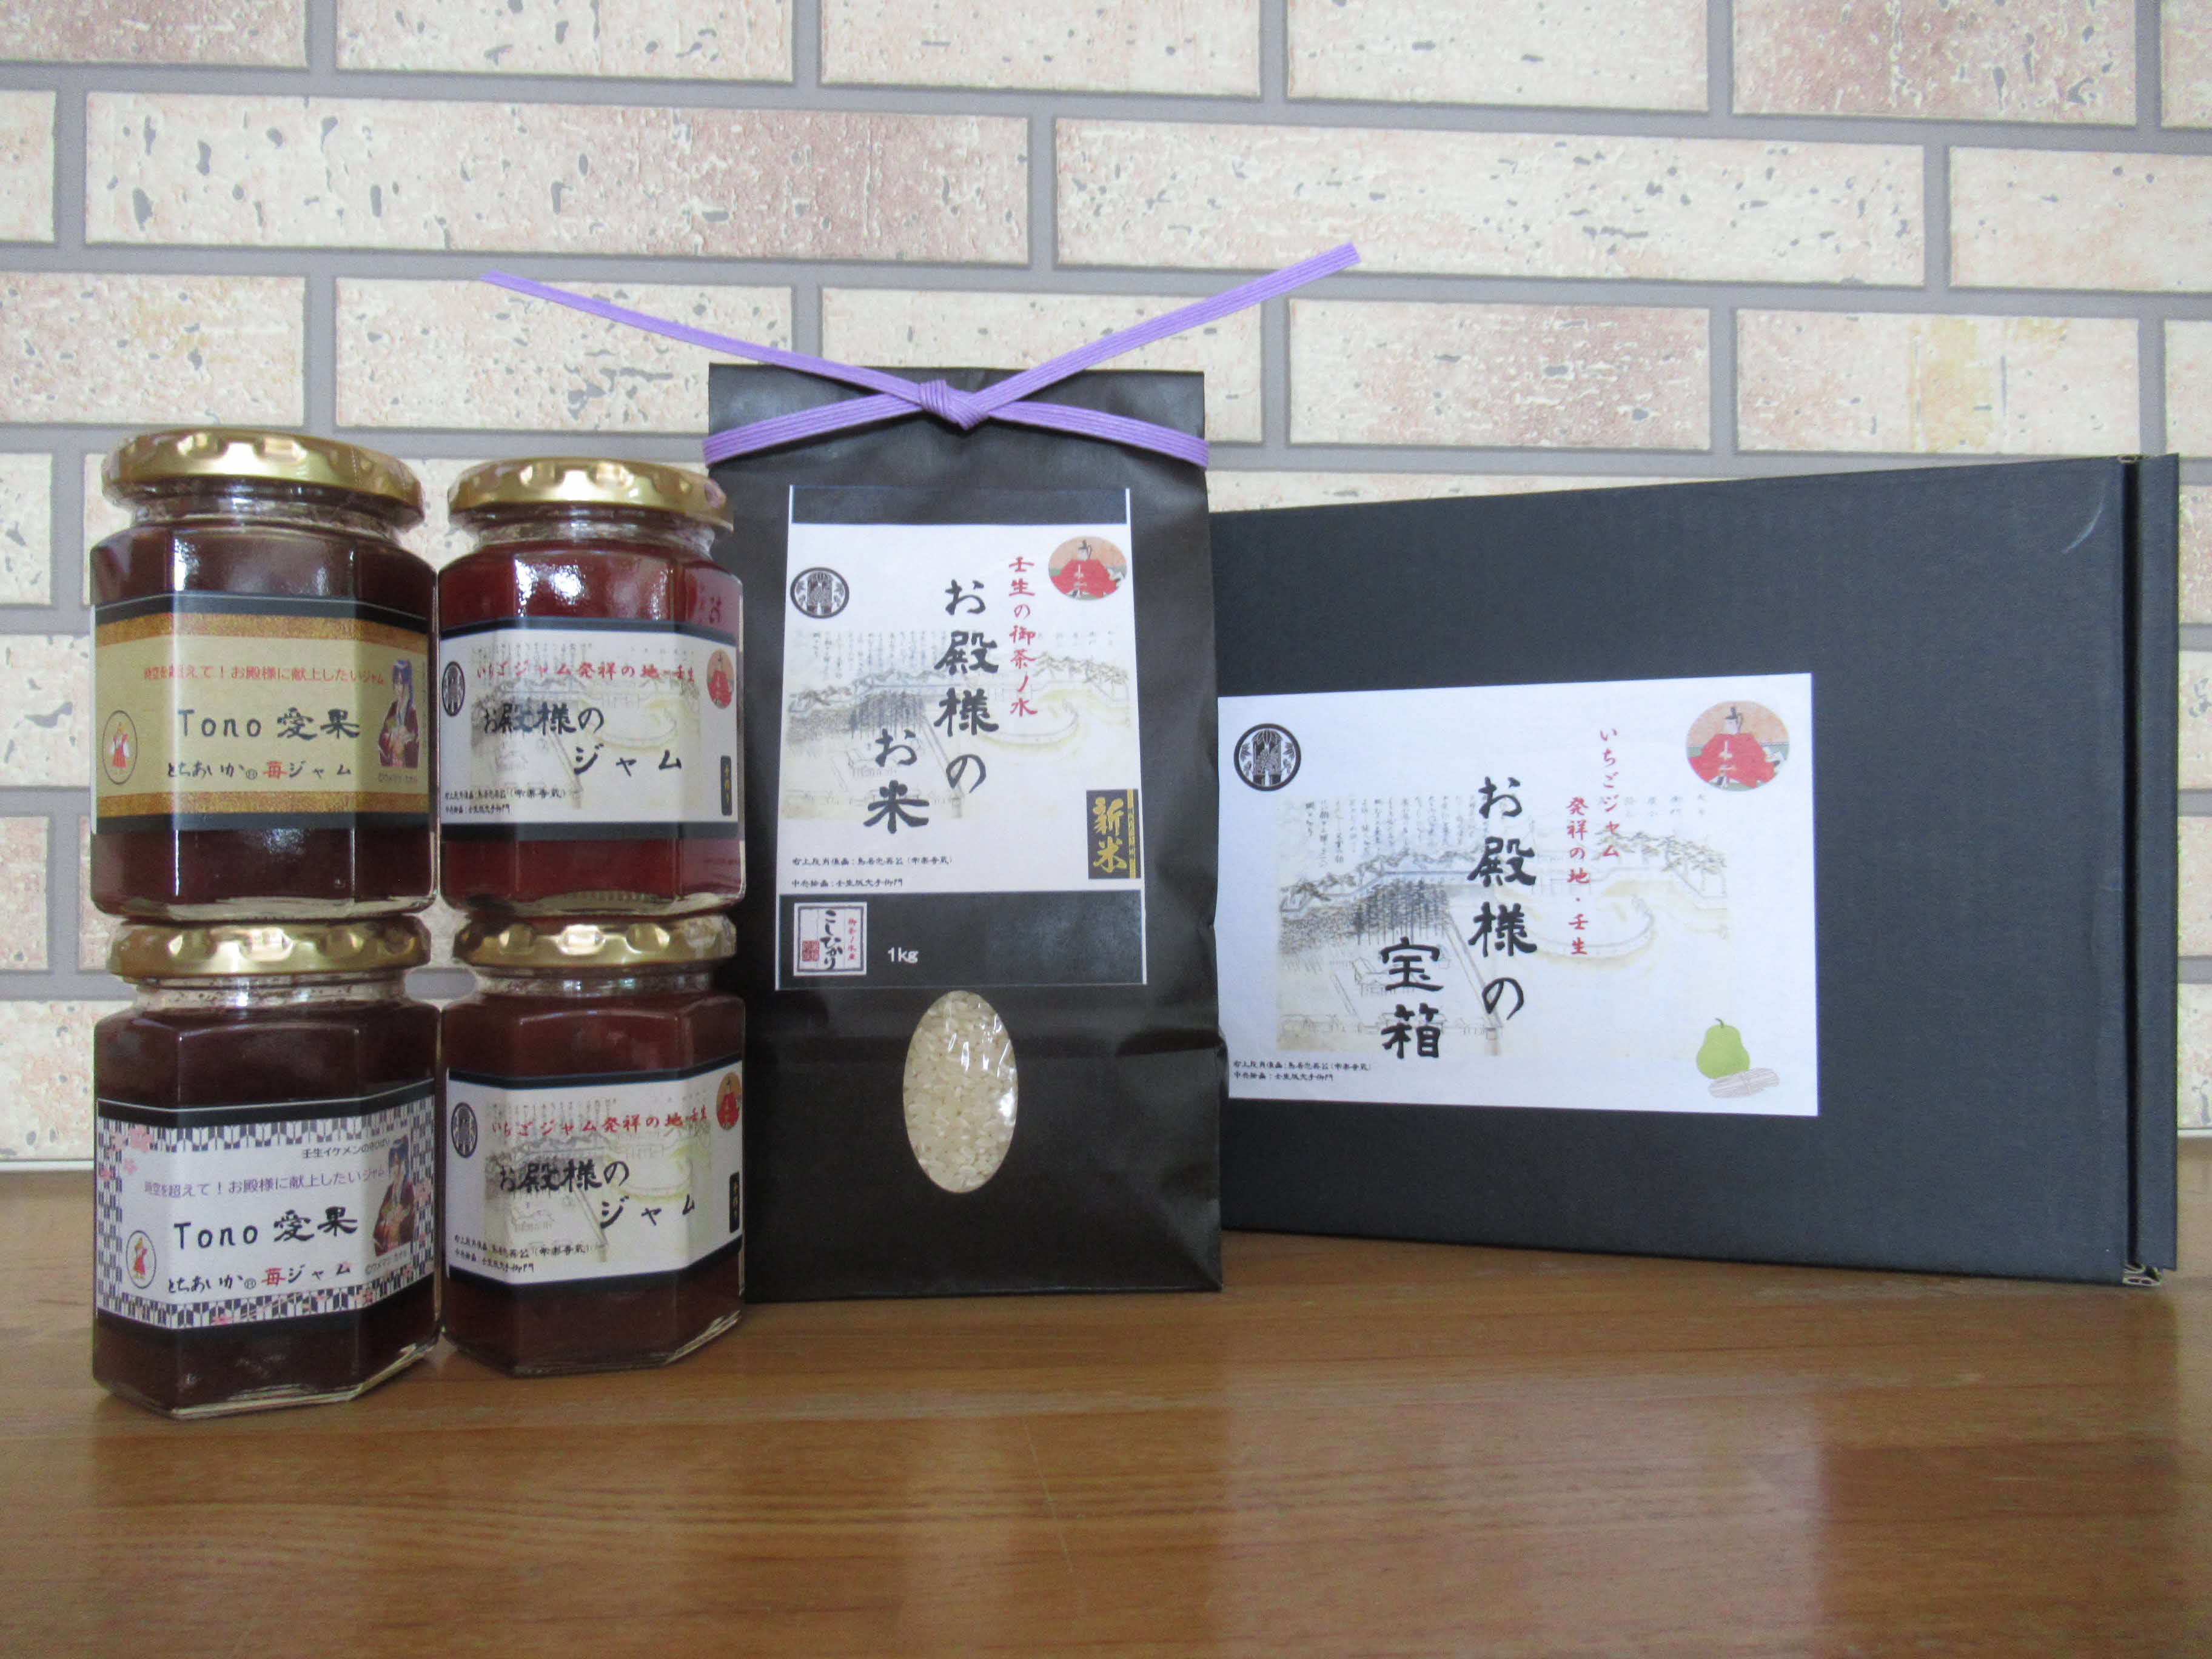 お殿様の宝箱 (お米・ジャムのセット) コシヒカリ いちごジャム 食べ比べ 国産 栃木県壬生町